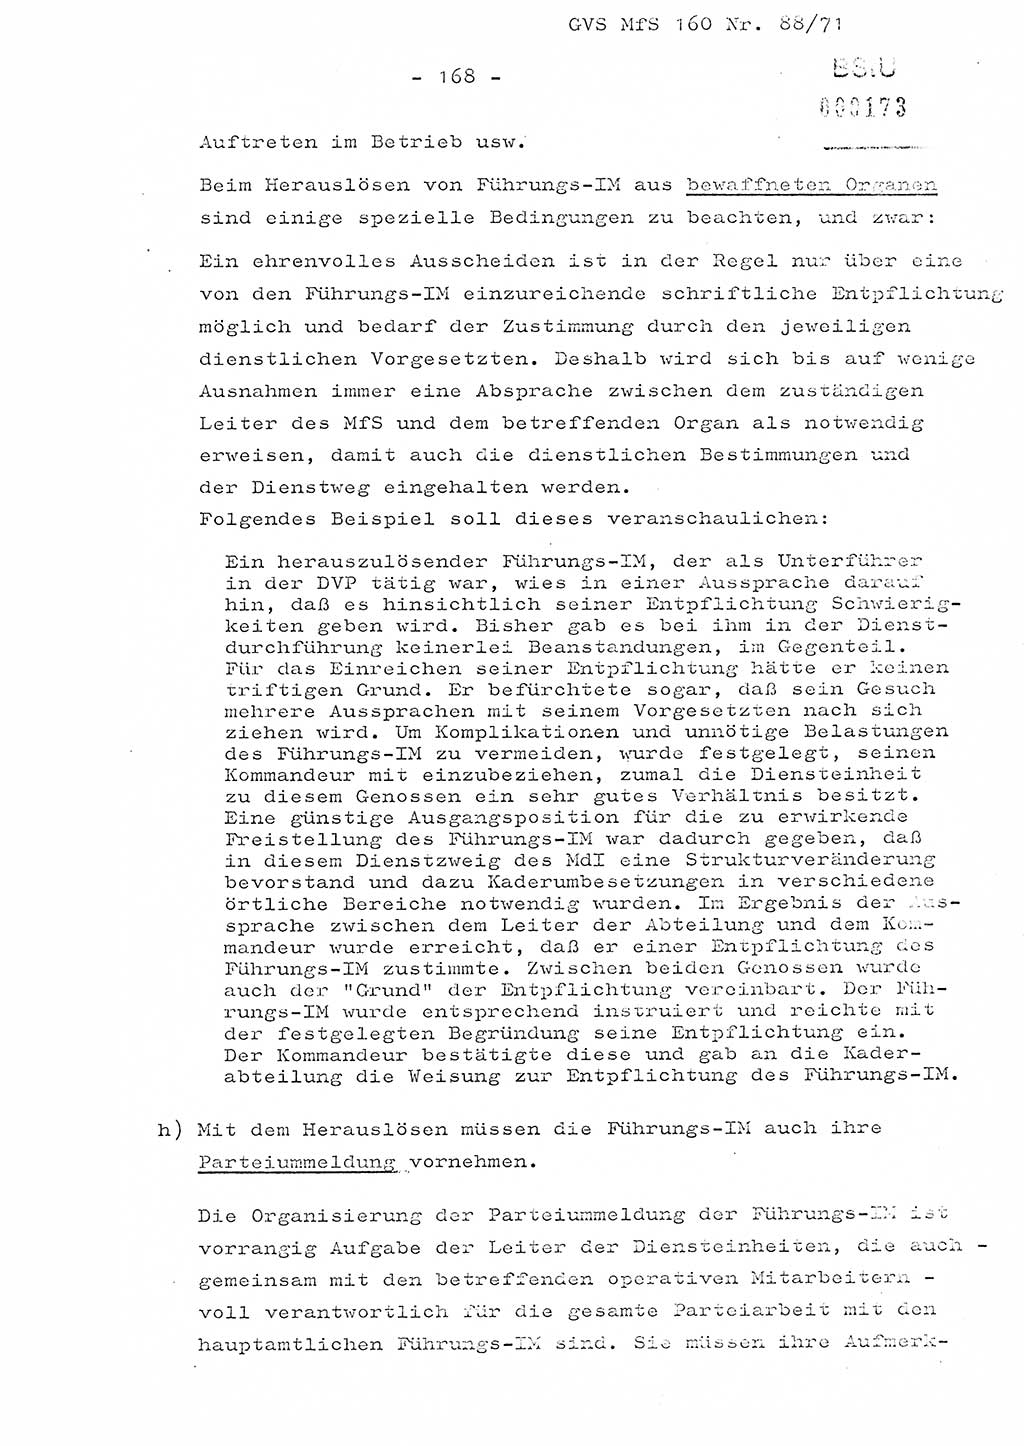 Dissertation Oberstleutnant Josef Schwarz (BV Schwerin), Major Fritz Amm (JHS), Hauptmann Peter Gräßler (JHS), Ministerium für Staatssicherheit (MfS) [Deutsche Demokratische Republik (DDR)], Juristische Hochschule (JHS), Geheime Verschlußsache (GVS) 160-88/71, Potsdam 1972, Seite 168 (Diss. MfS DDR JHS GVS 160-88/71 1972, S. 168)